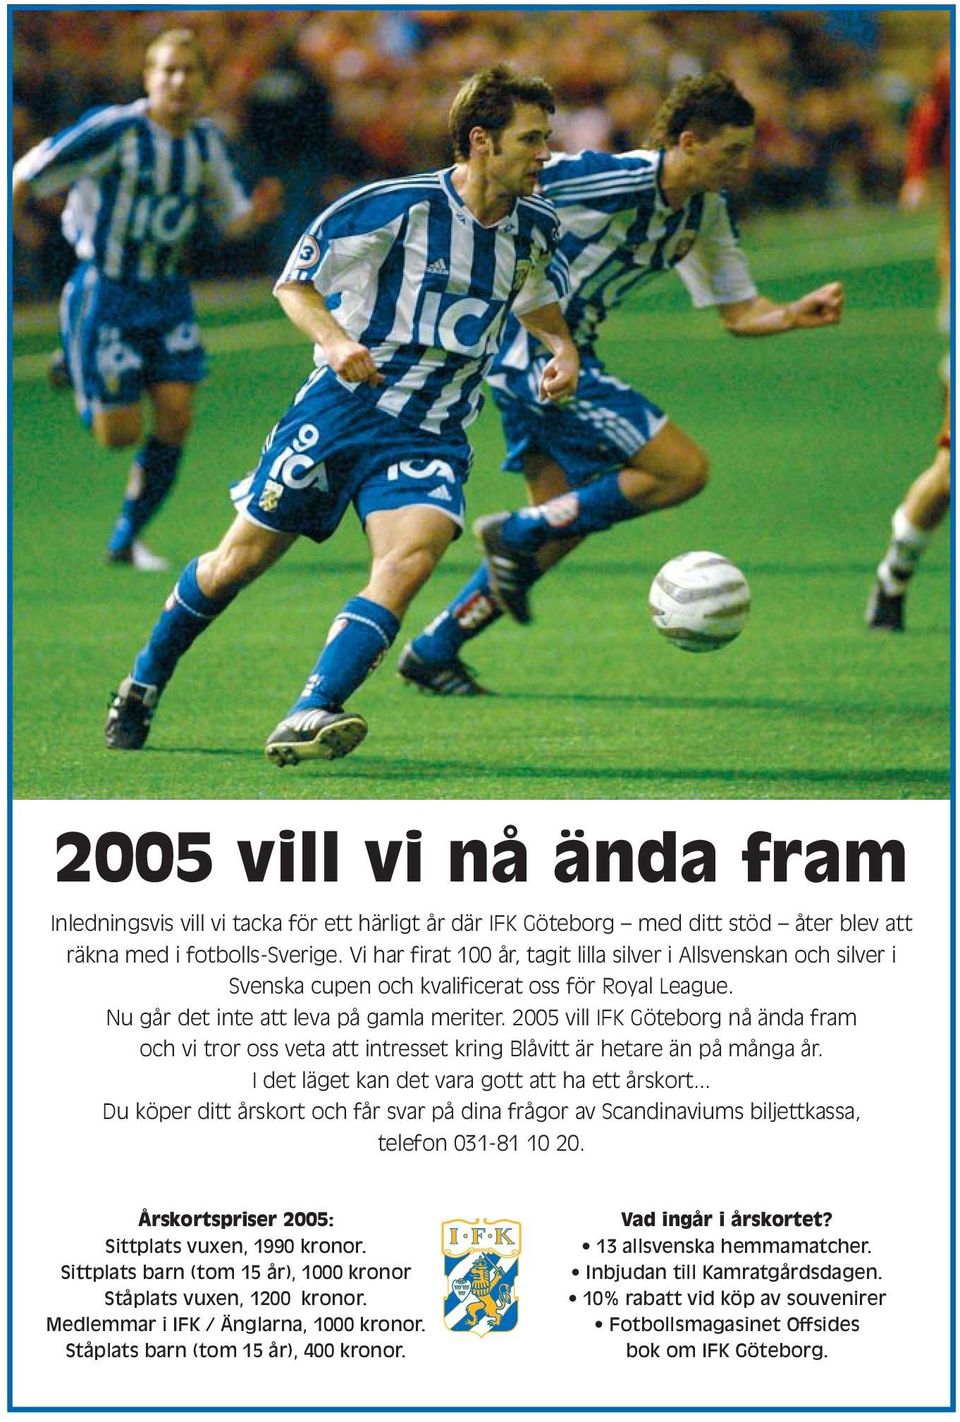 2005 vill IFK Göteborg nå ända fram och vi tror oss veta att intresset kring Blåvitt är hetare än på många år. I det läget kan det vara gott att ha ett årskort.